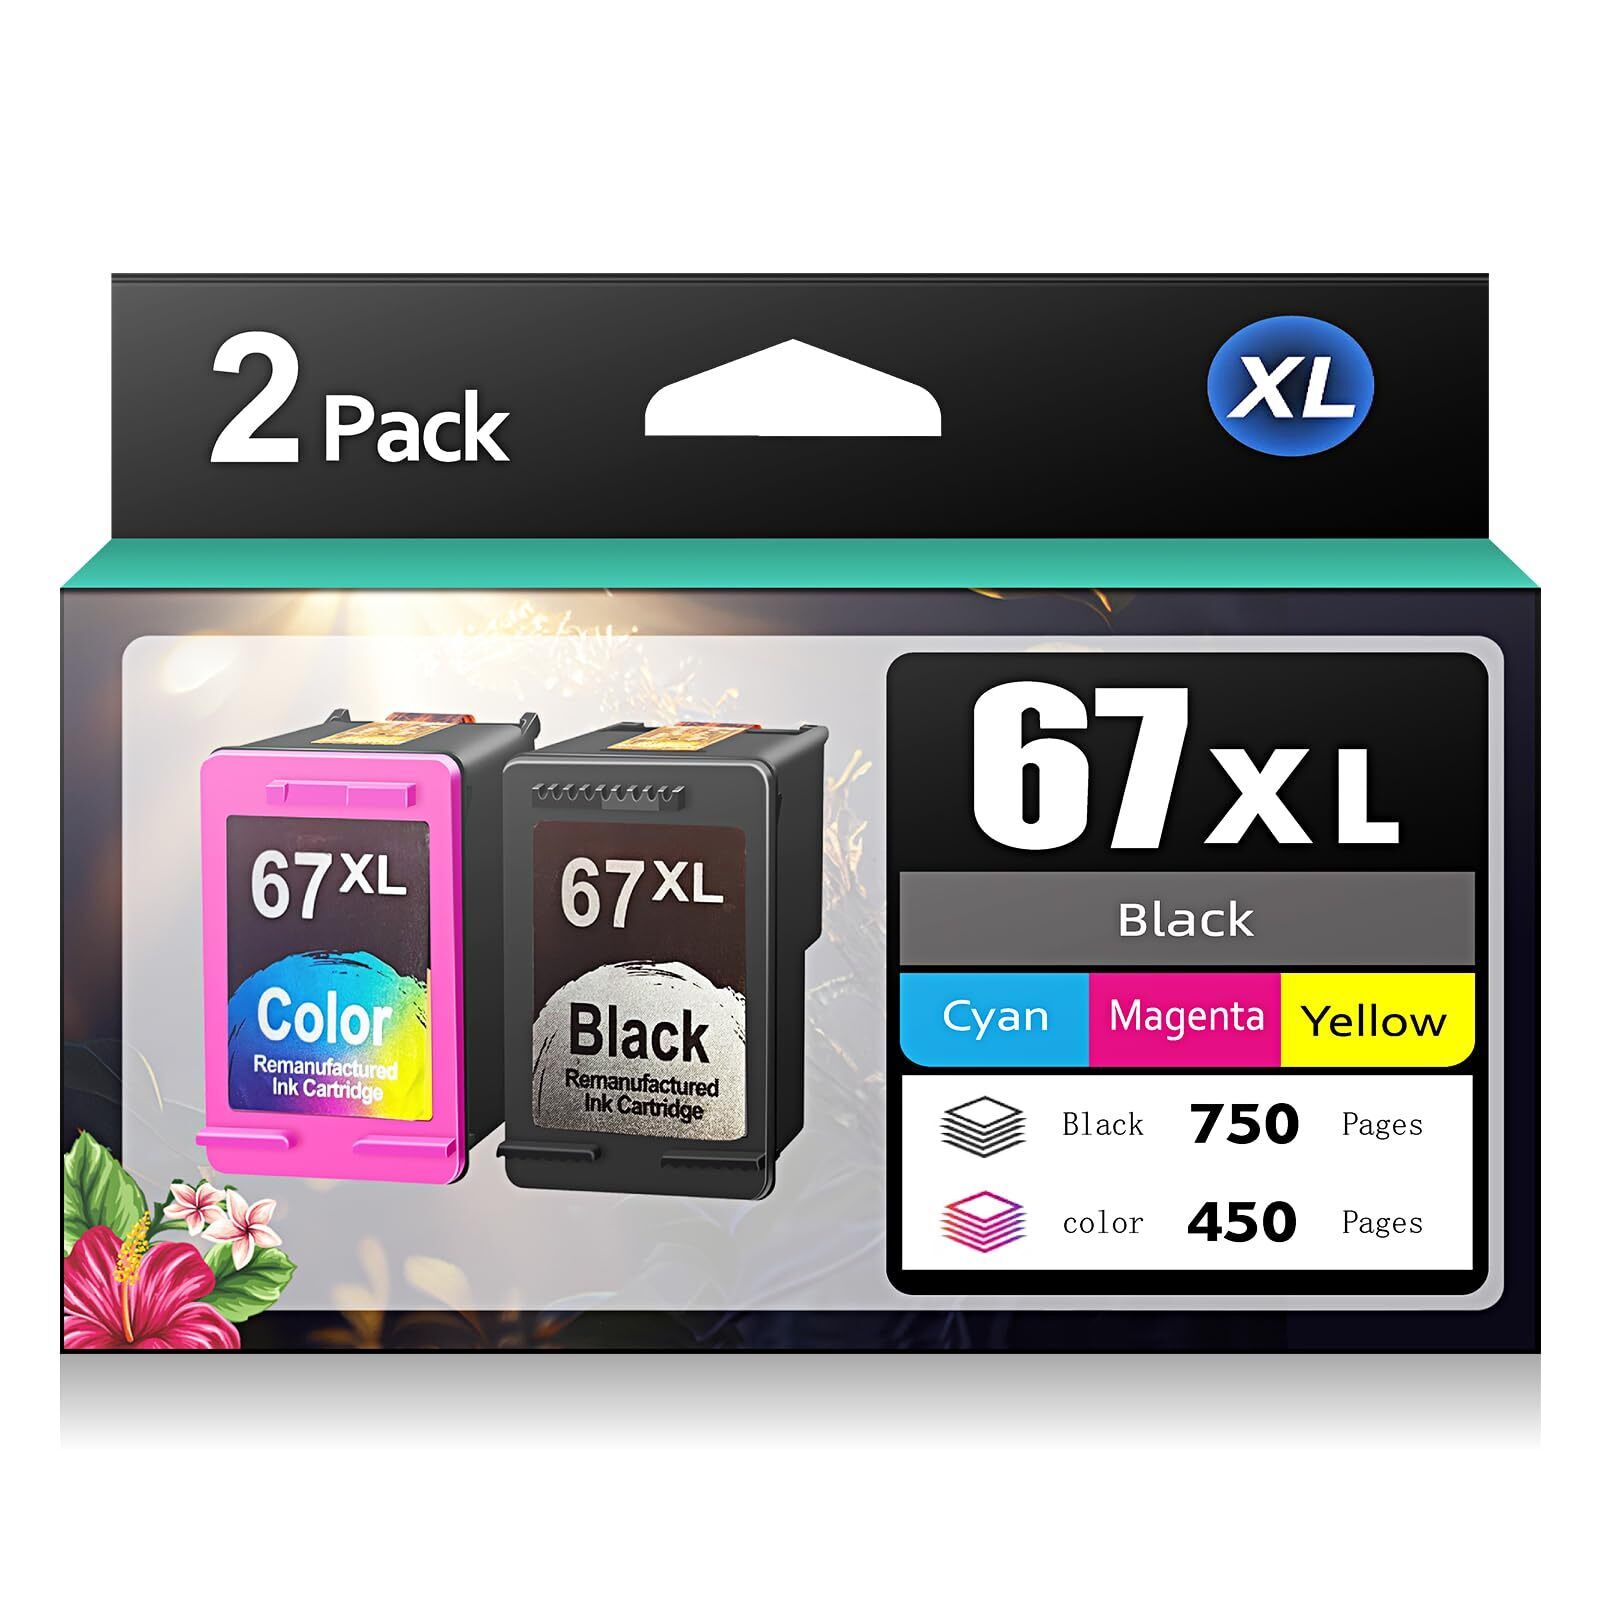 67XL Black and Color Ink Cartridges for HP Deskjet 1255/2700, Envy 6000 Series